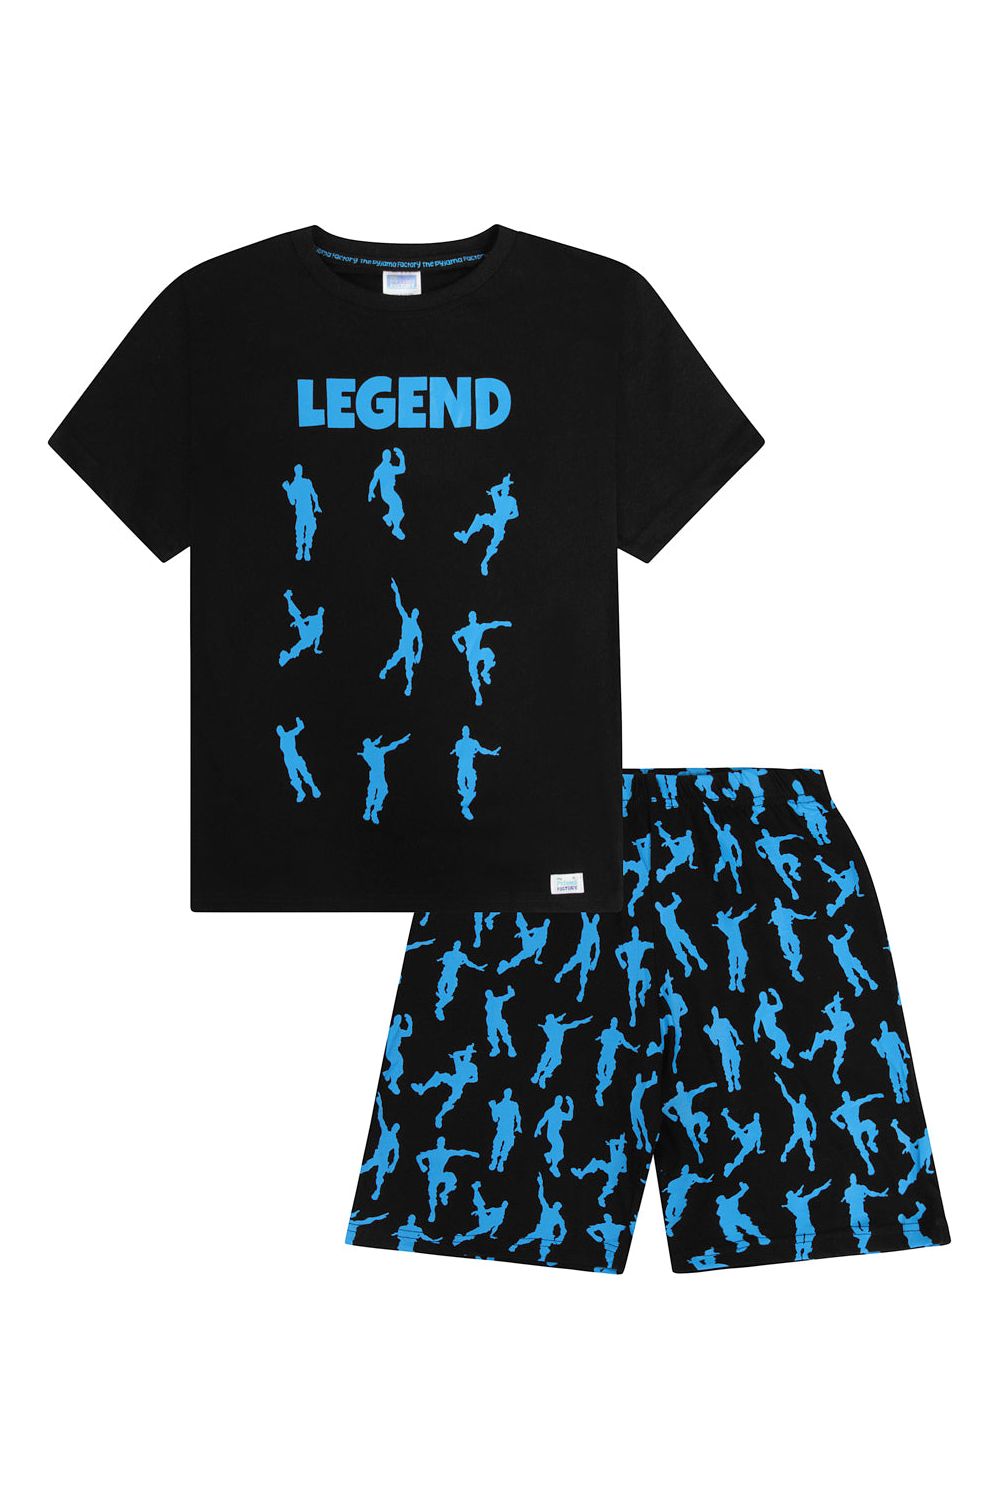 Legend Emote Dance Gaming Blue Short Pyjamas - Pyjamas.com